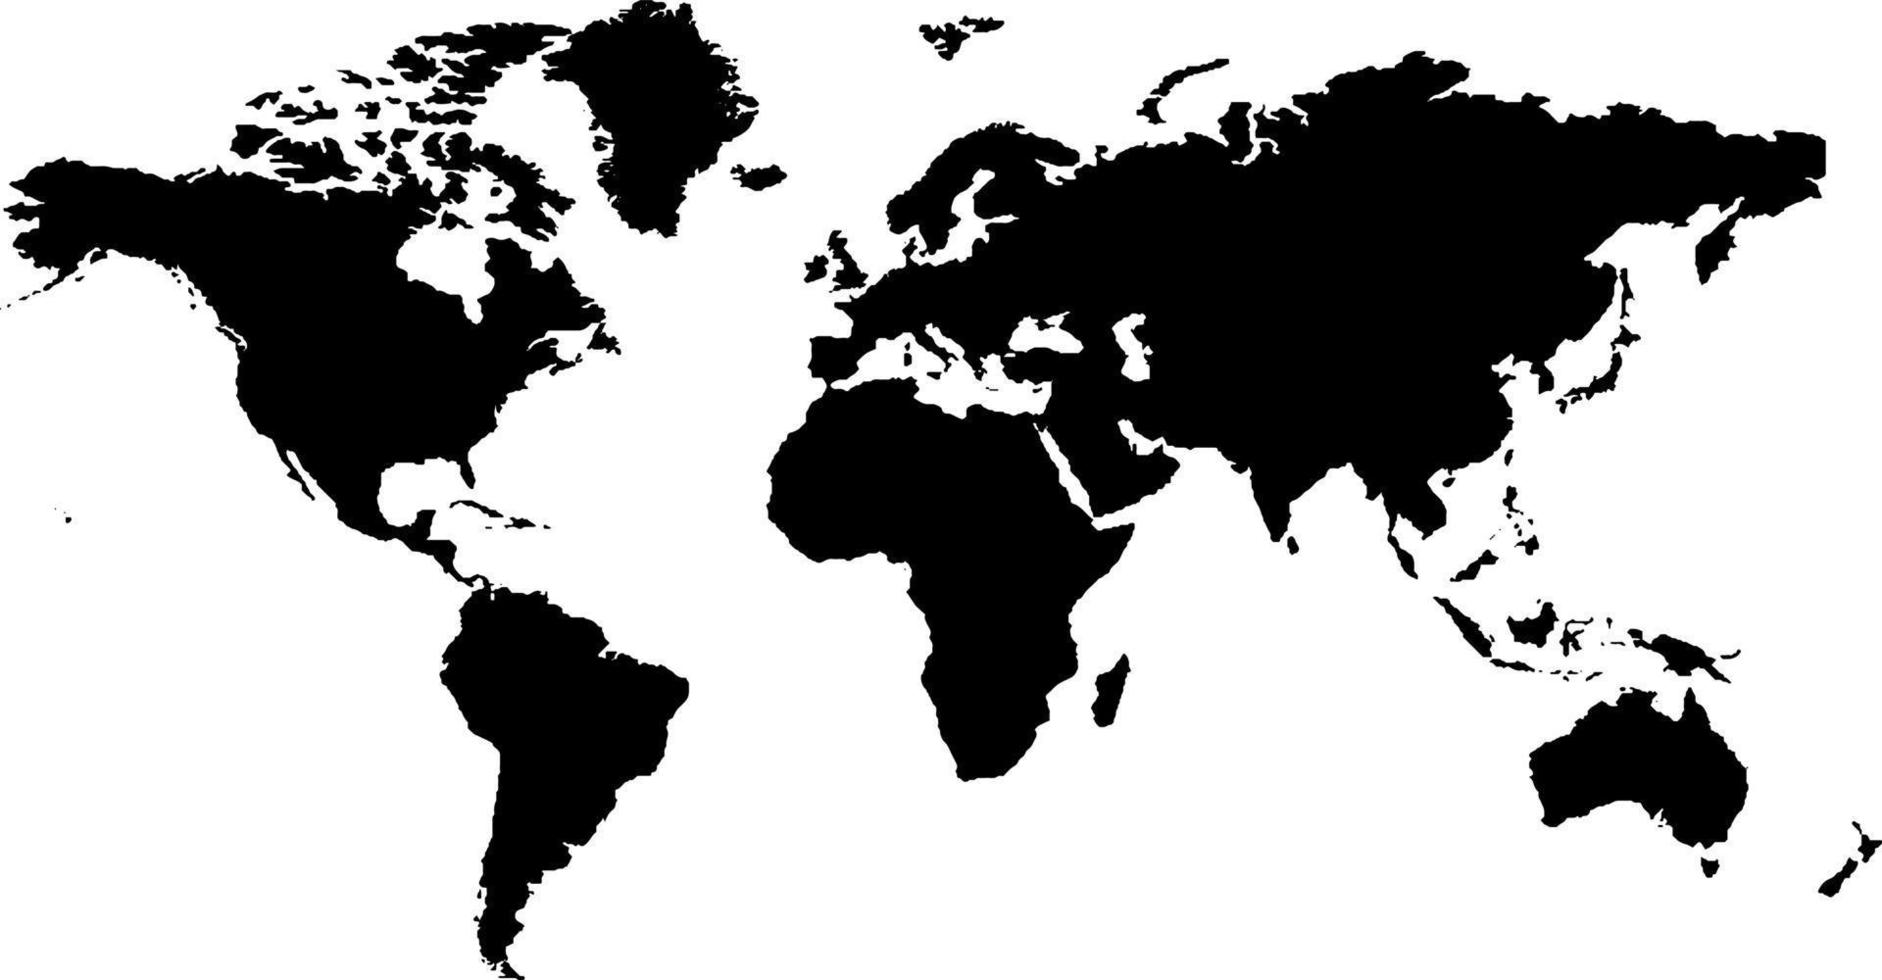 mapa de contorno global de color negro. mapa político del mundo. cartografía mundial. mapa de ilustración vectorial. vector